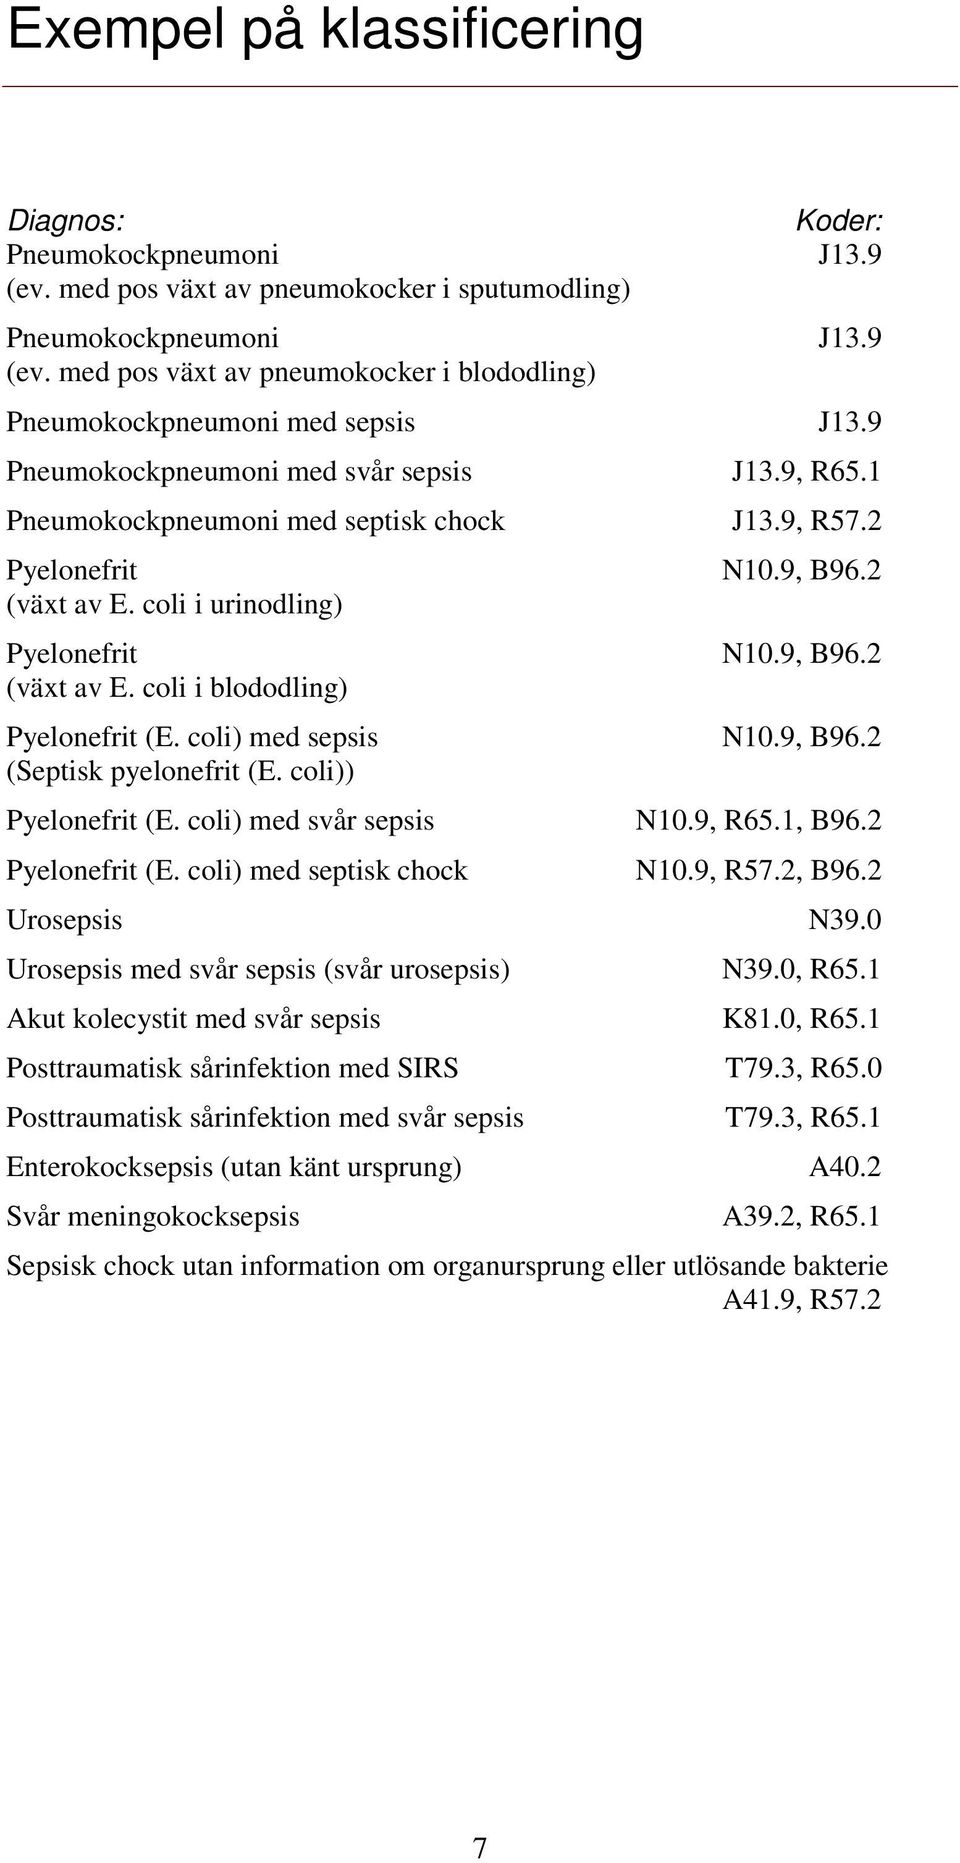 coli) med sepsis N10.9, B96.2 (Septisk pyelonefrit (E. coli)) Pyelonefrit (E. coli) med svår sepsis N10.9, R65.1, B96.2 Pyelonefrit (E. coli) med septisk chock N10.9, R57.2, B96.2 Urosepsis N39.